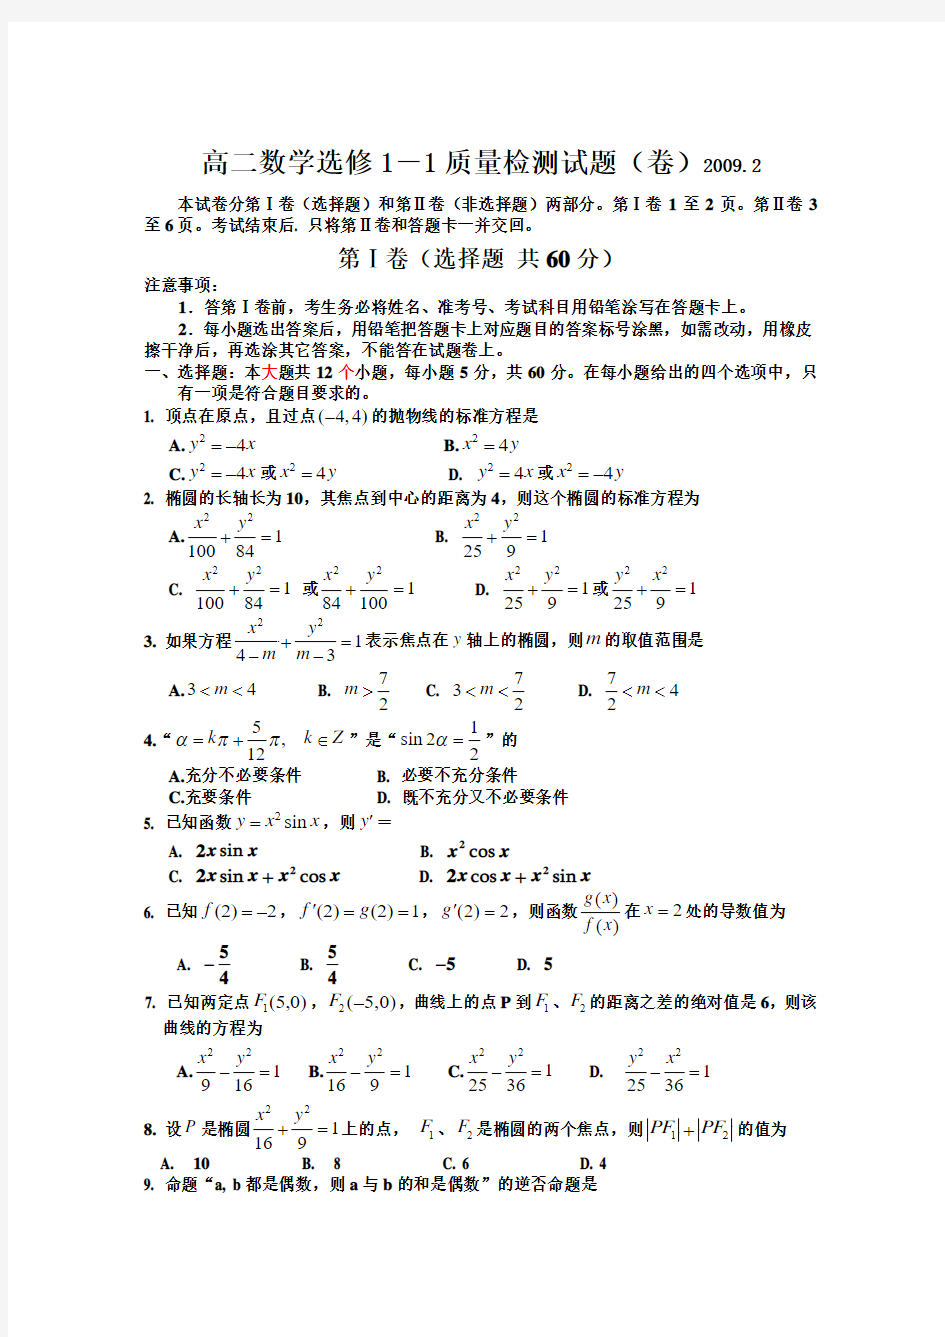 高二数学选修1-1质量检测试题(卷)20092